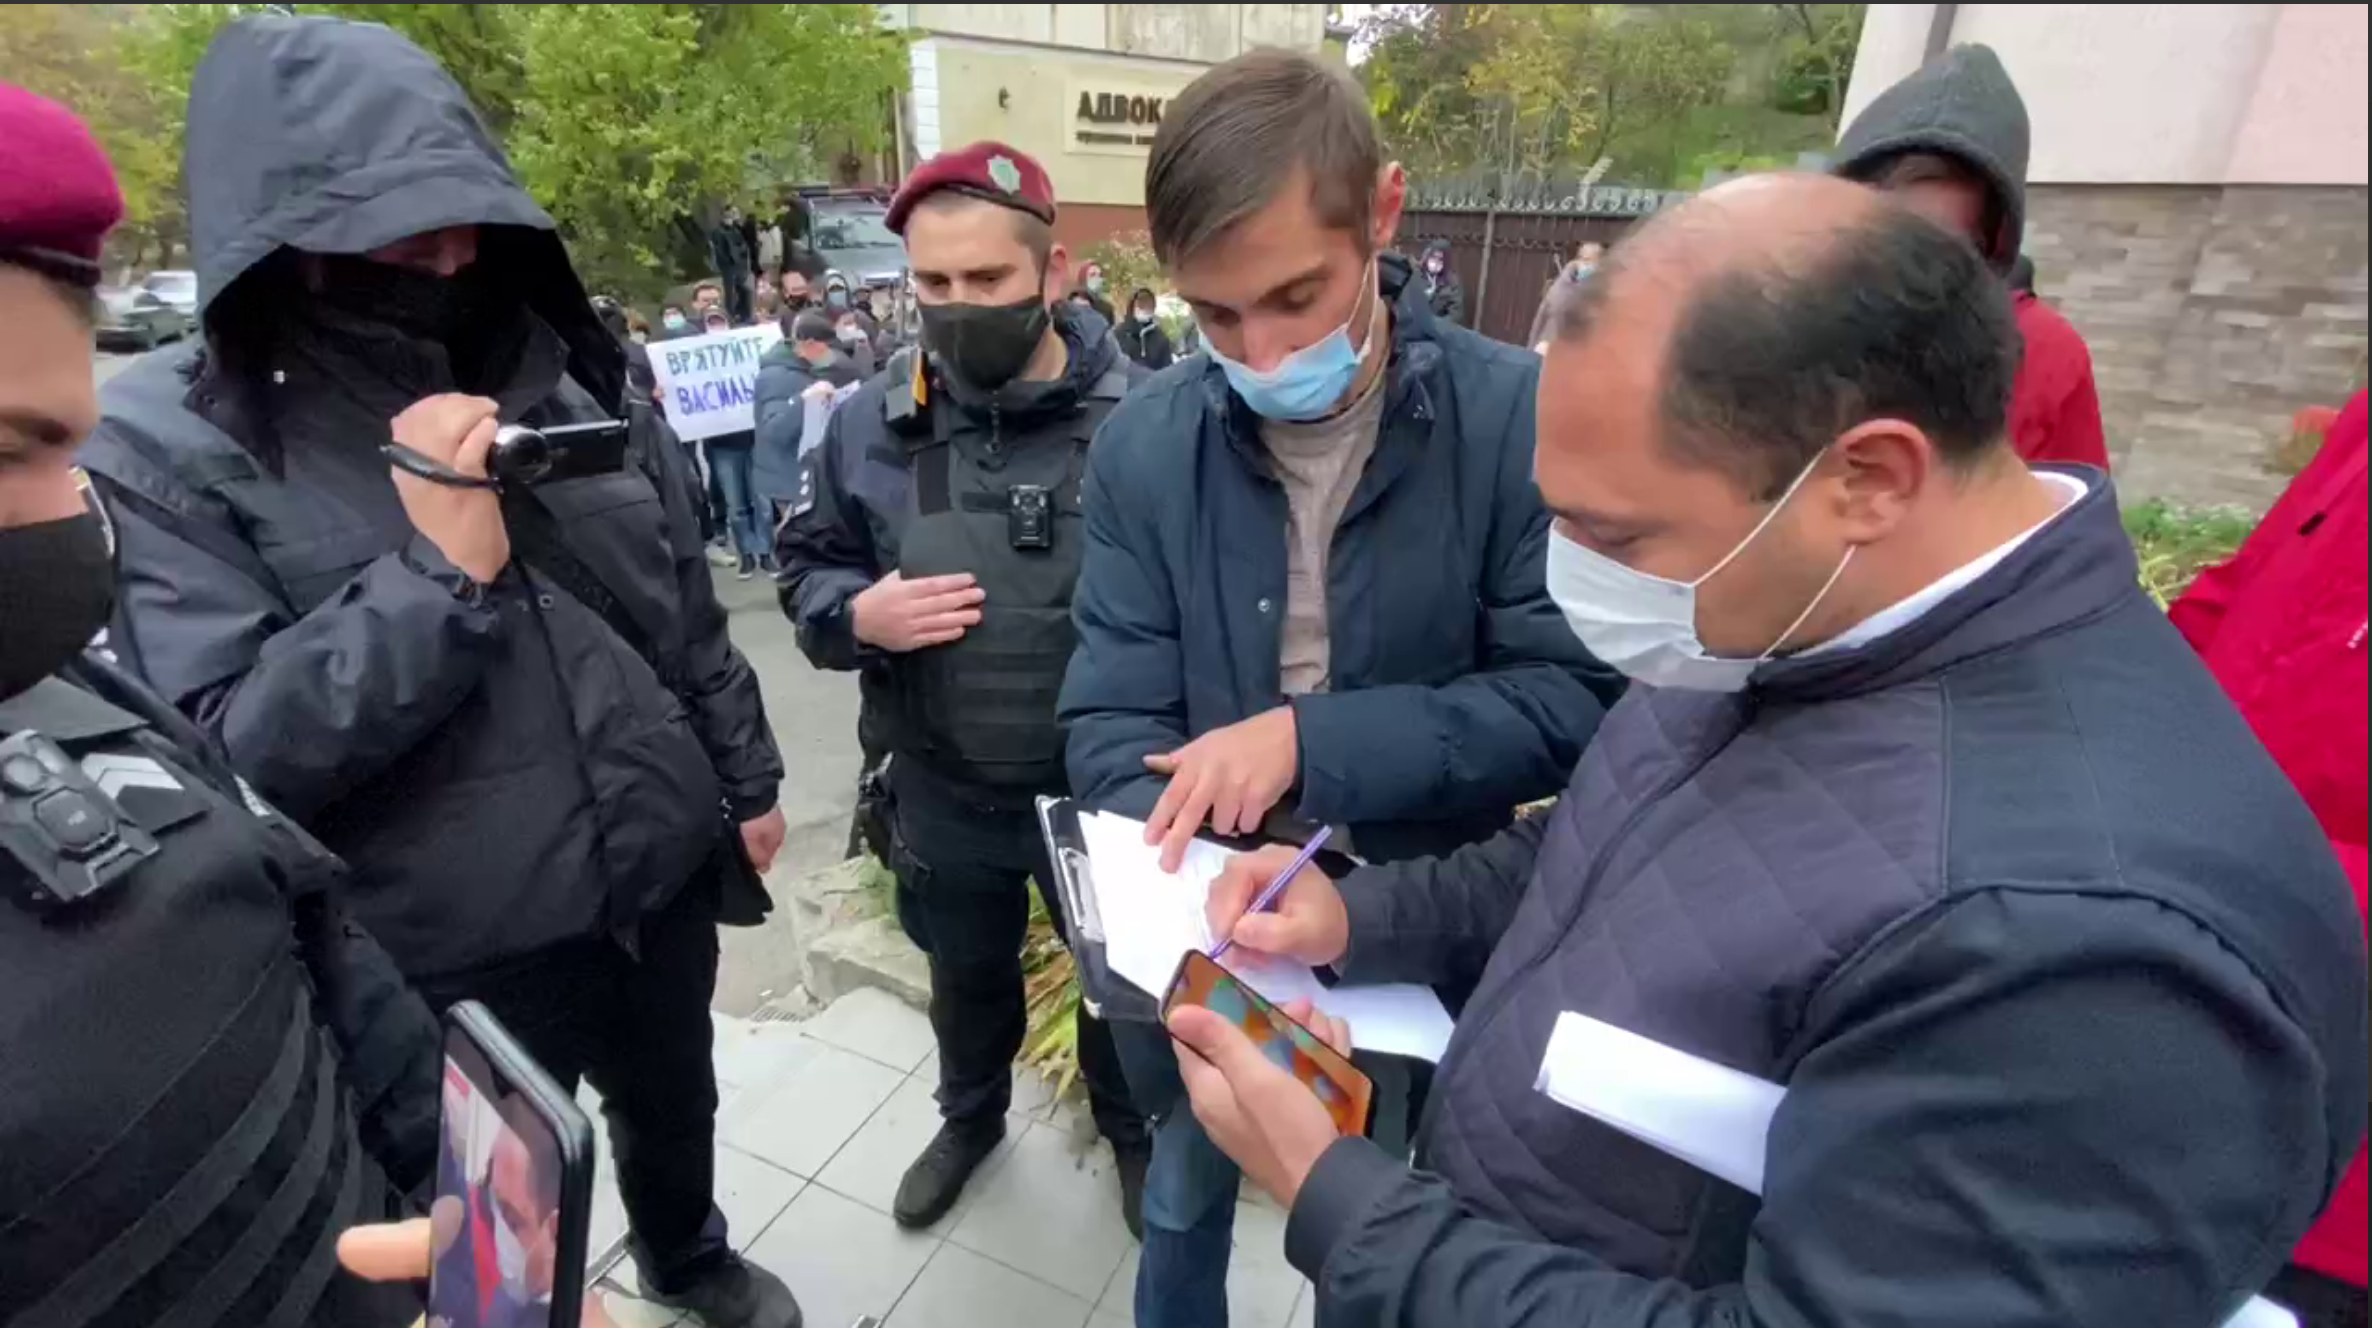 Поліція Василькова вручила підозру місцевому “кримінальному елементу” Артаку за напад на журналіста